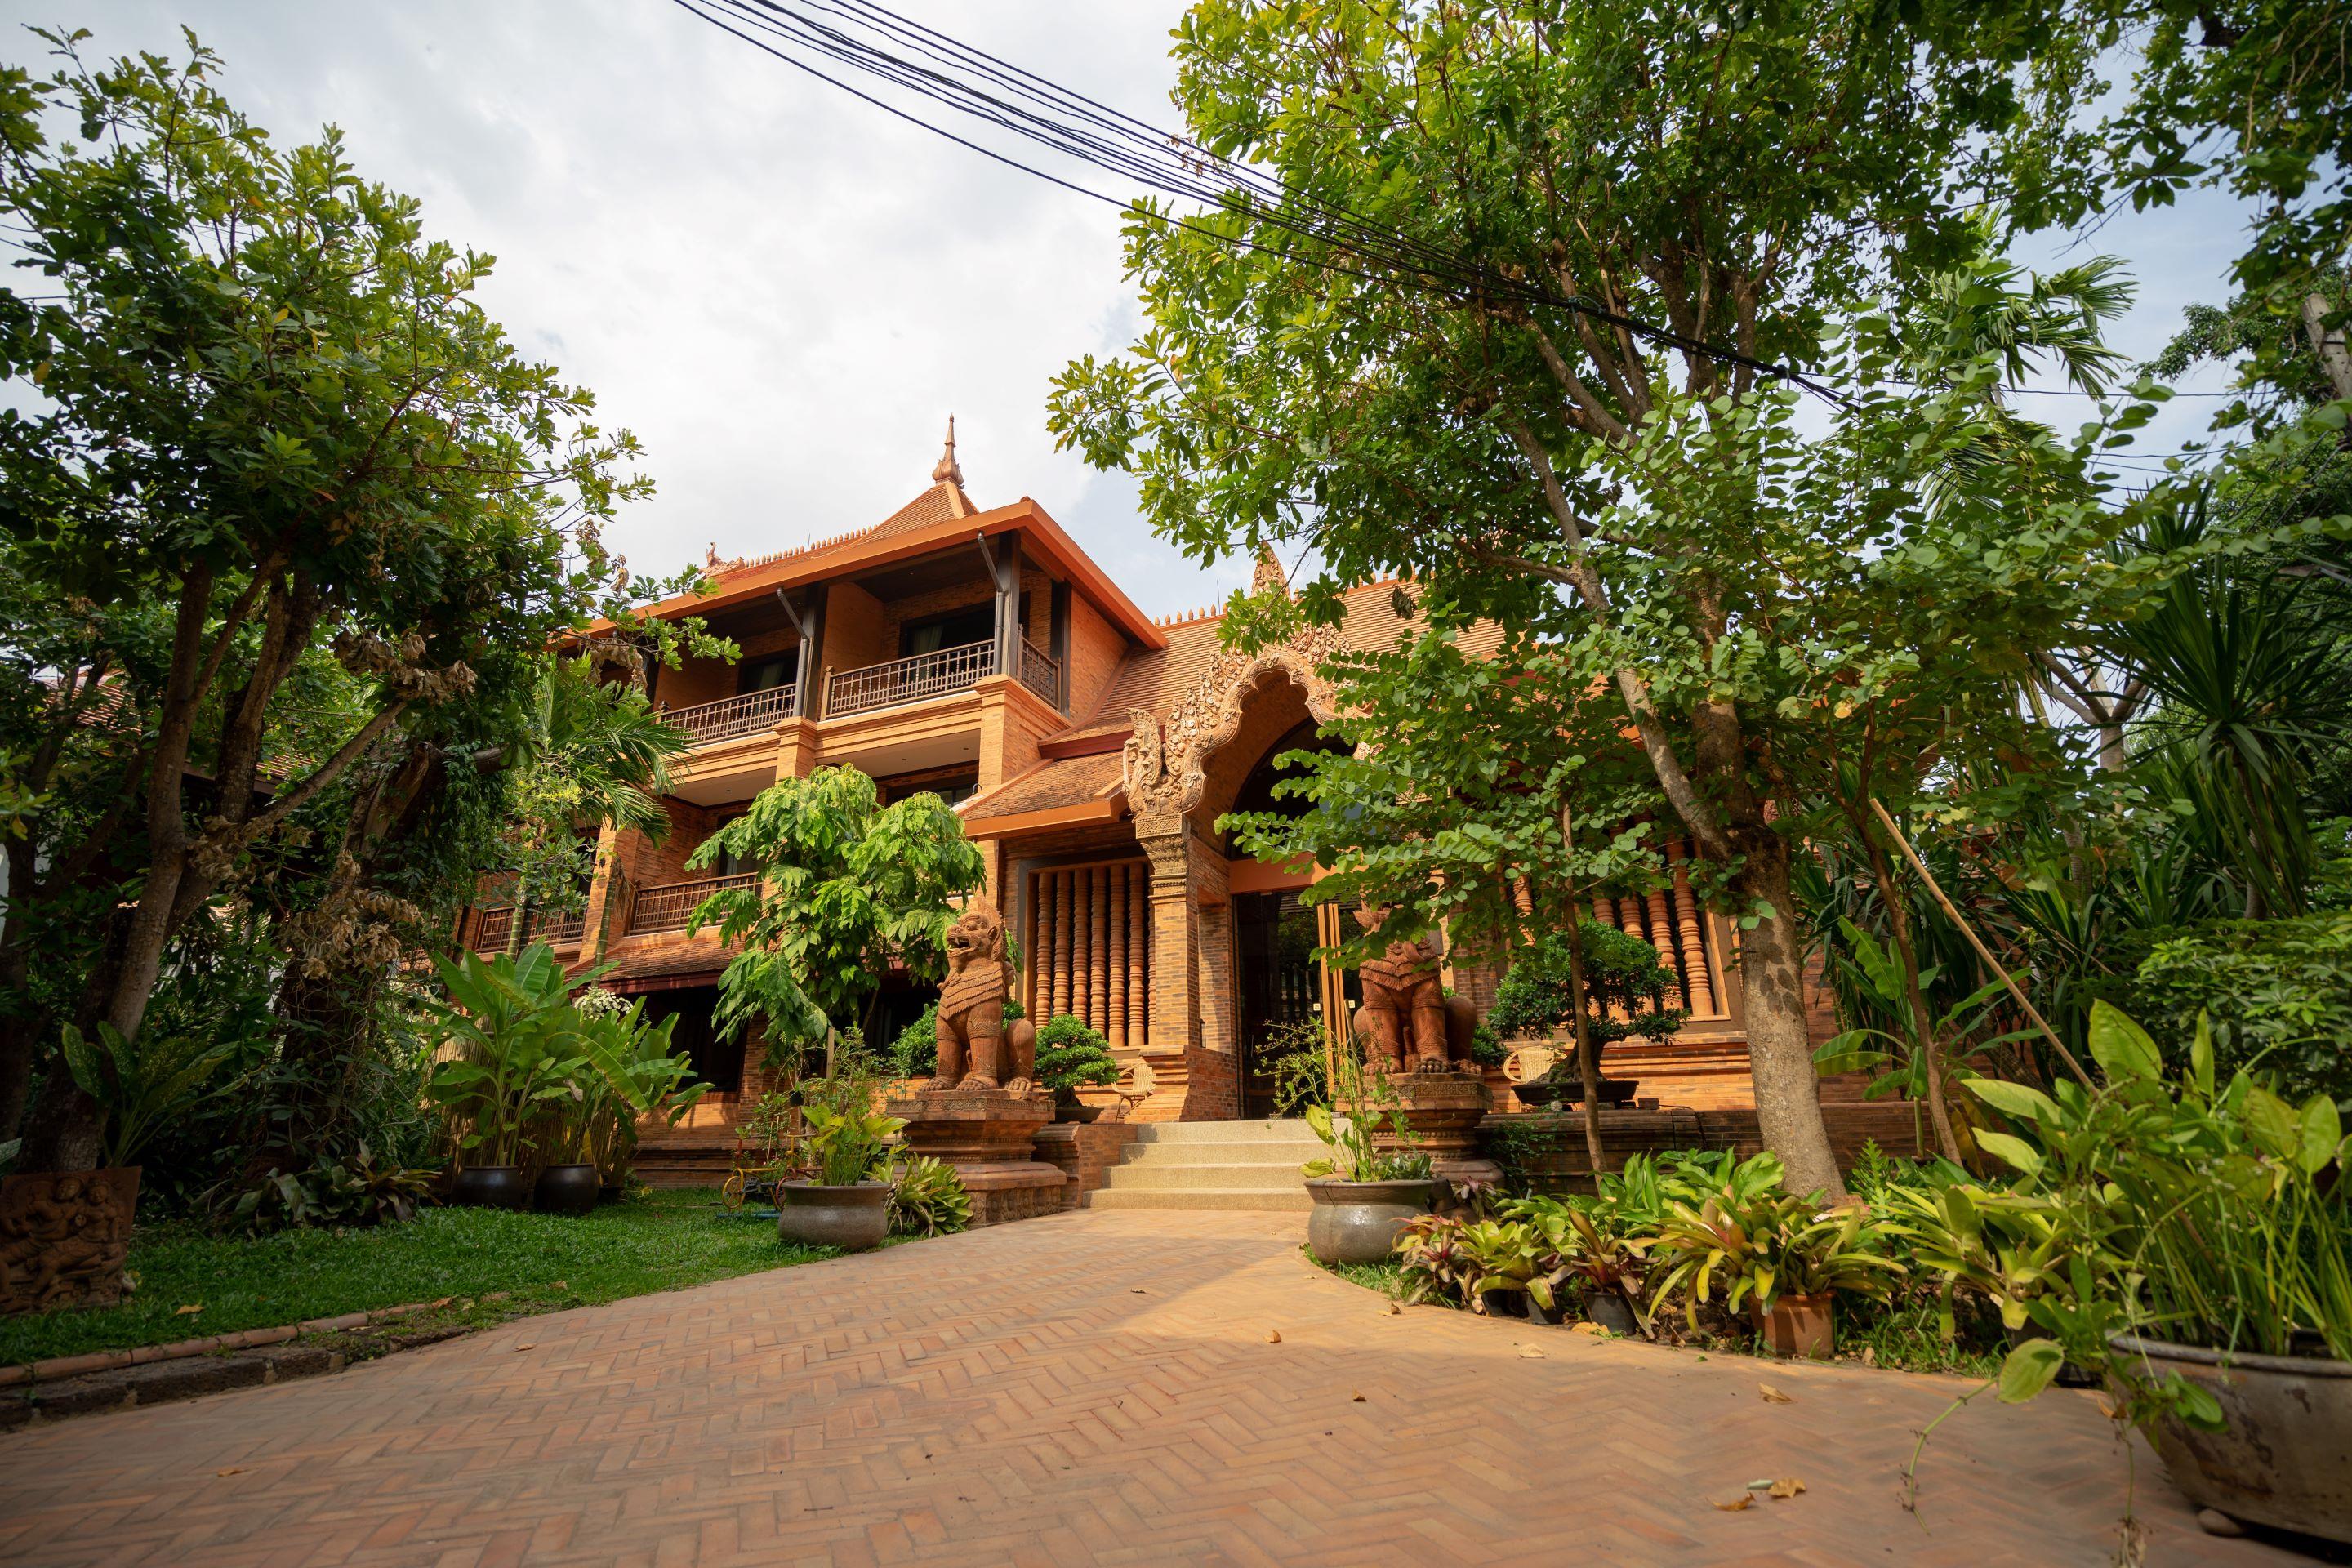 Phor Liang Meun Terracotta Arts - Sha Extra Plus Chiang Mai Luaran gambar